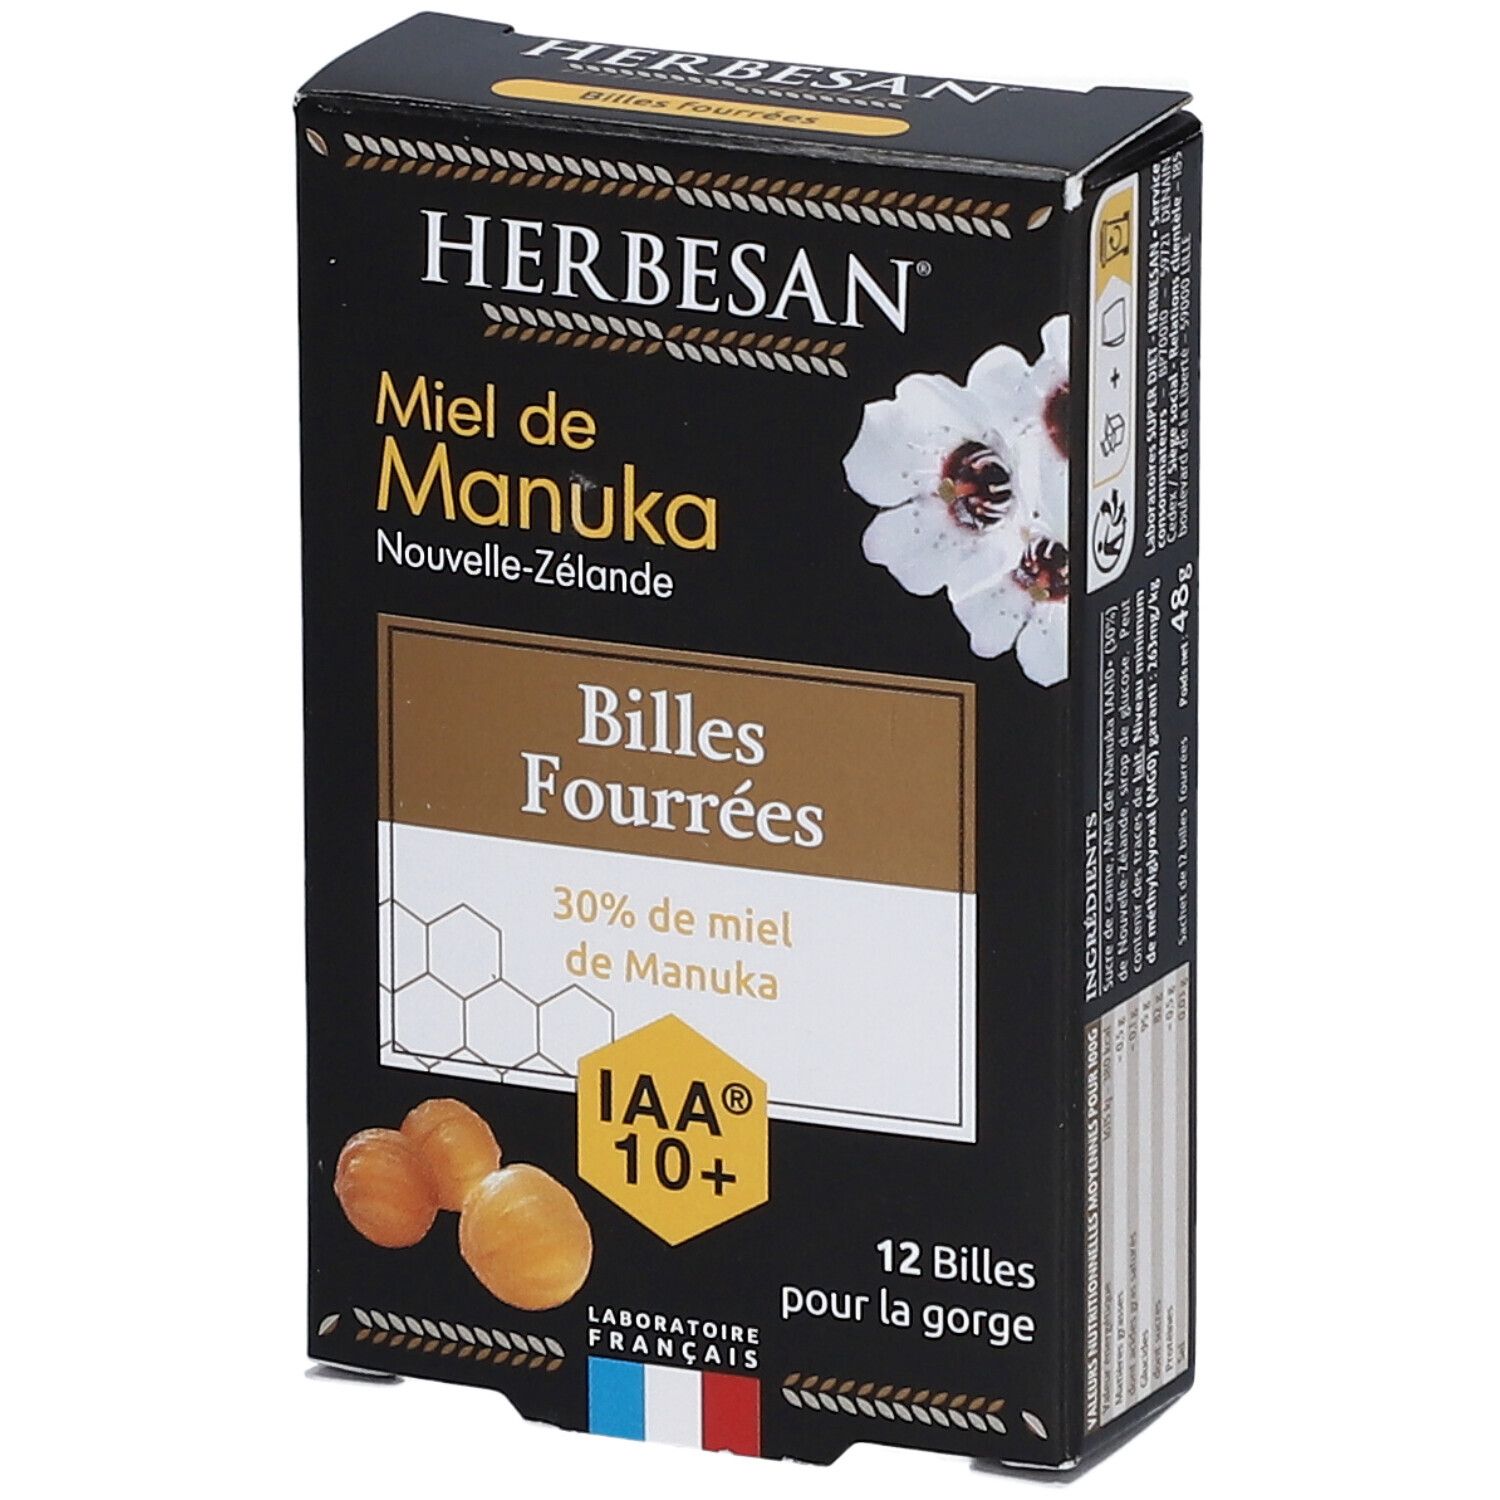 Herbesan® Miel de Manuka IAA 10+